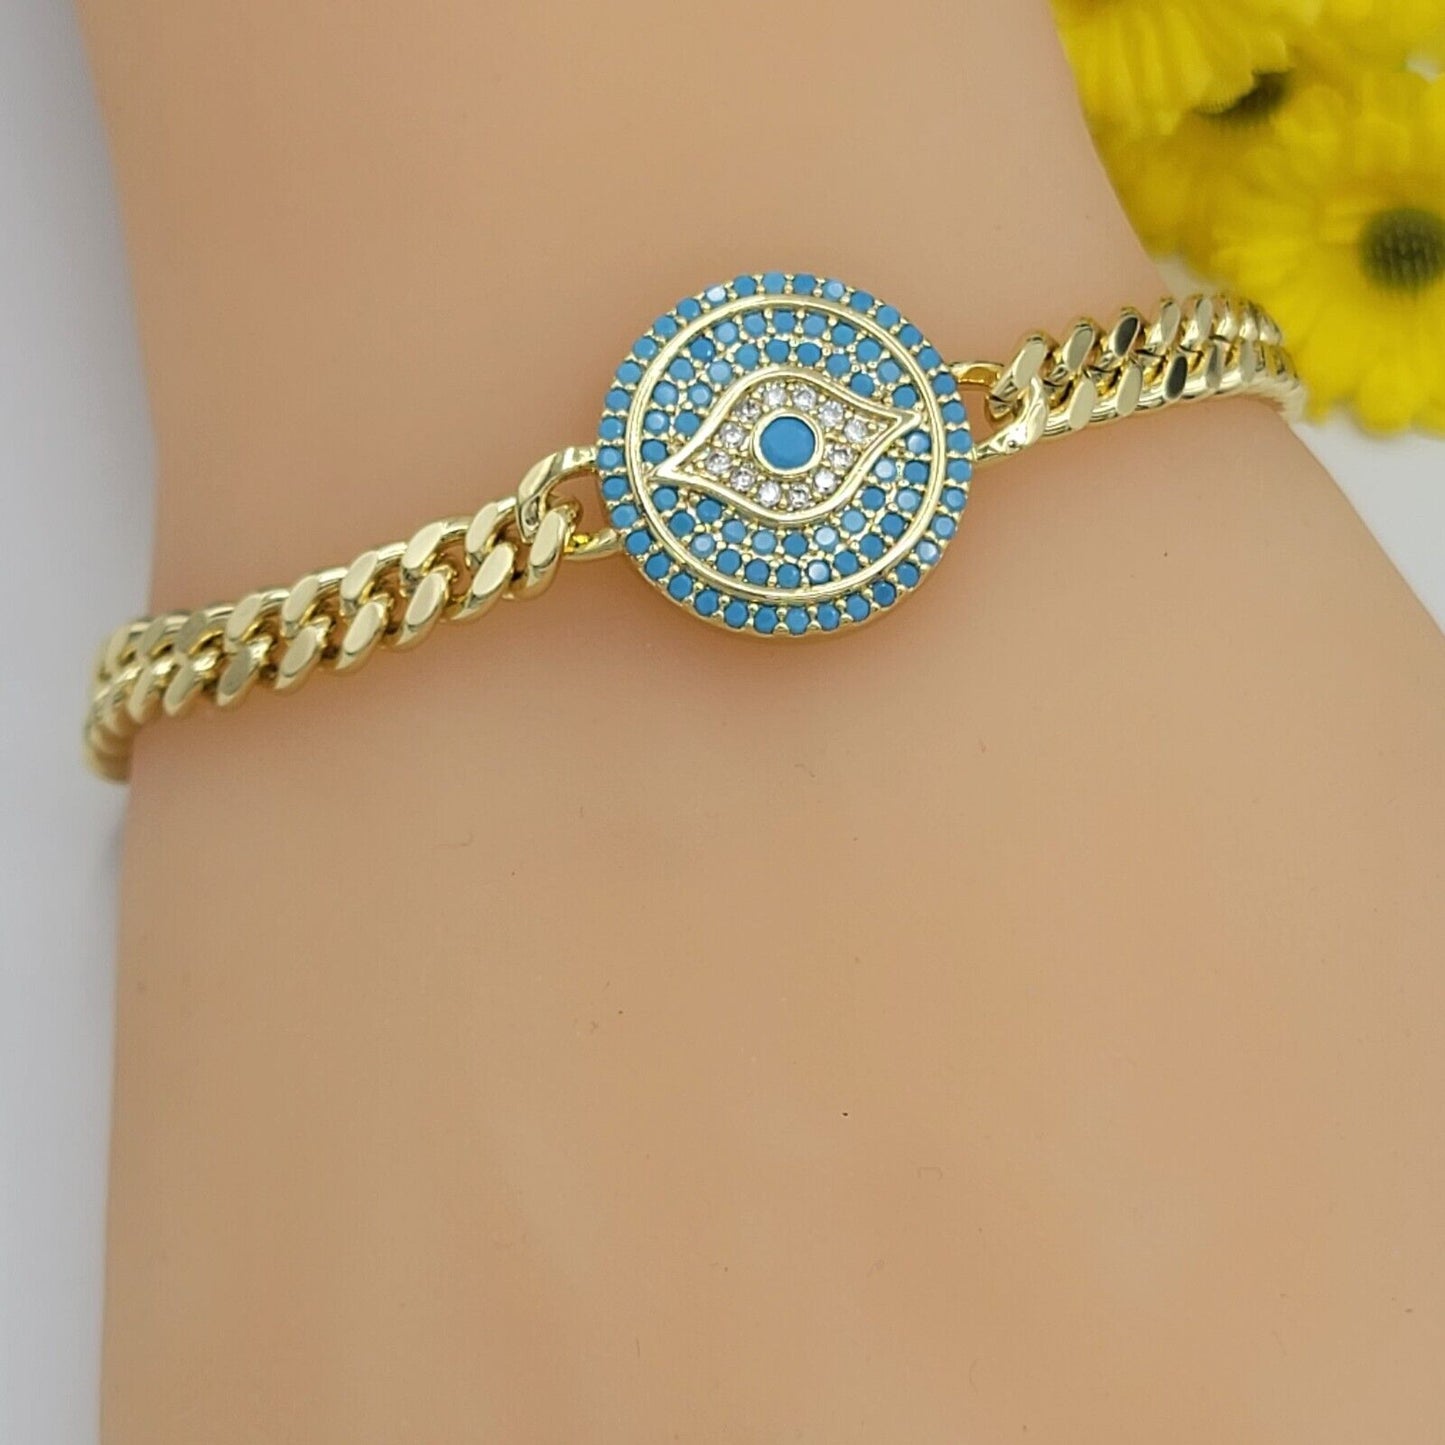 Bracelets - 14K Gold Plated. Blue Crystals Evil Eye Bracelet. Curb Link Chain. Amulet.